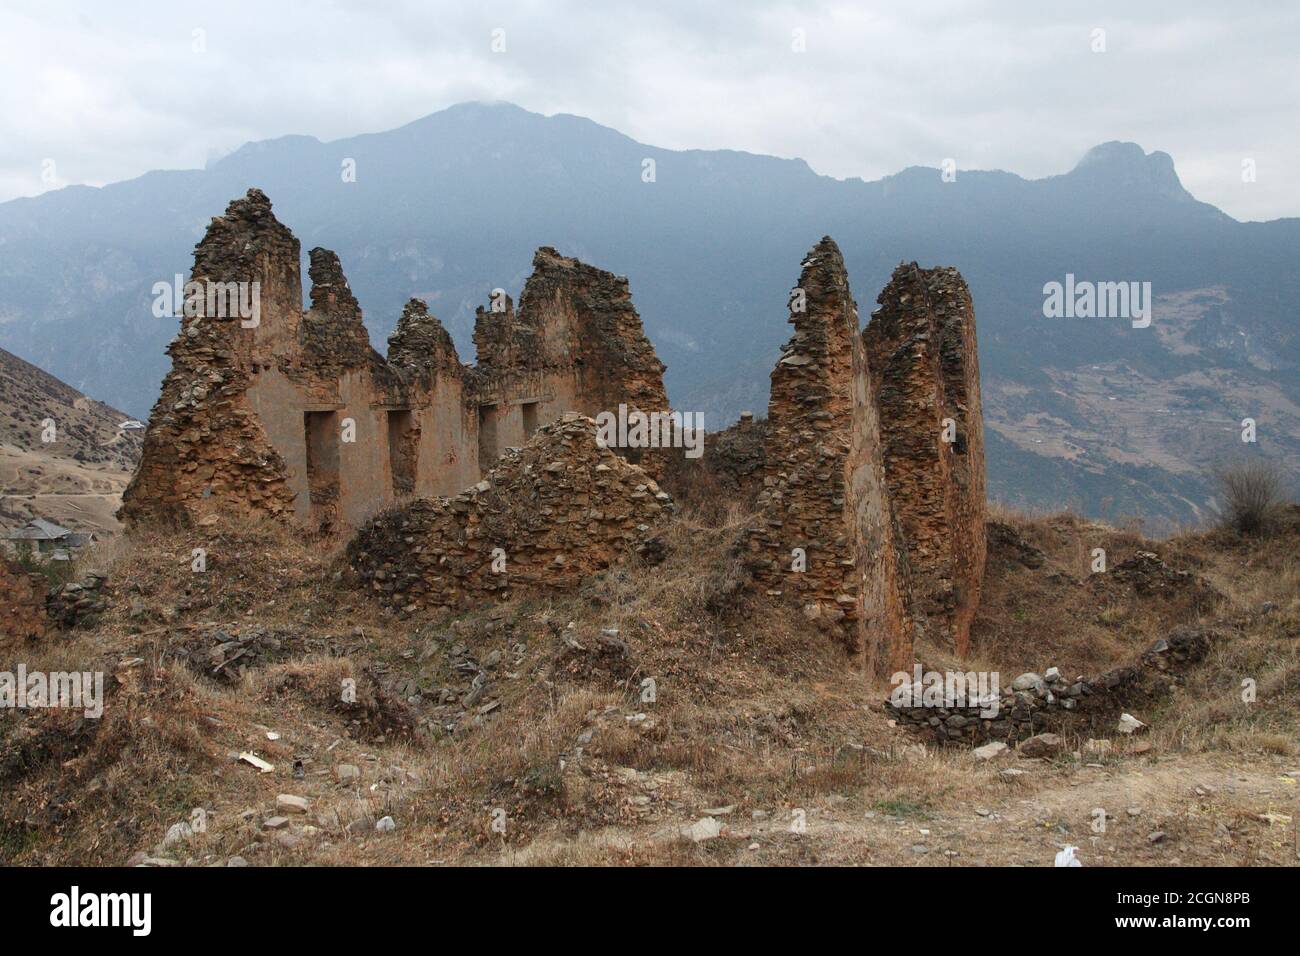 Ruine an der Stelle des Muli-Klosters, Wachang Town, Muli, West Sichuan, China 18. Dezember 2006 Stockfoto